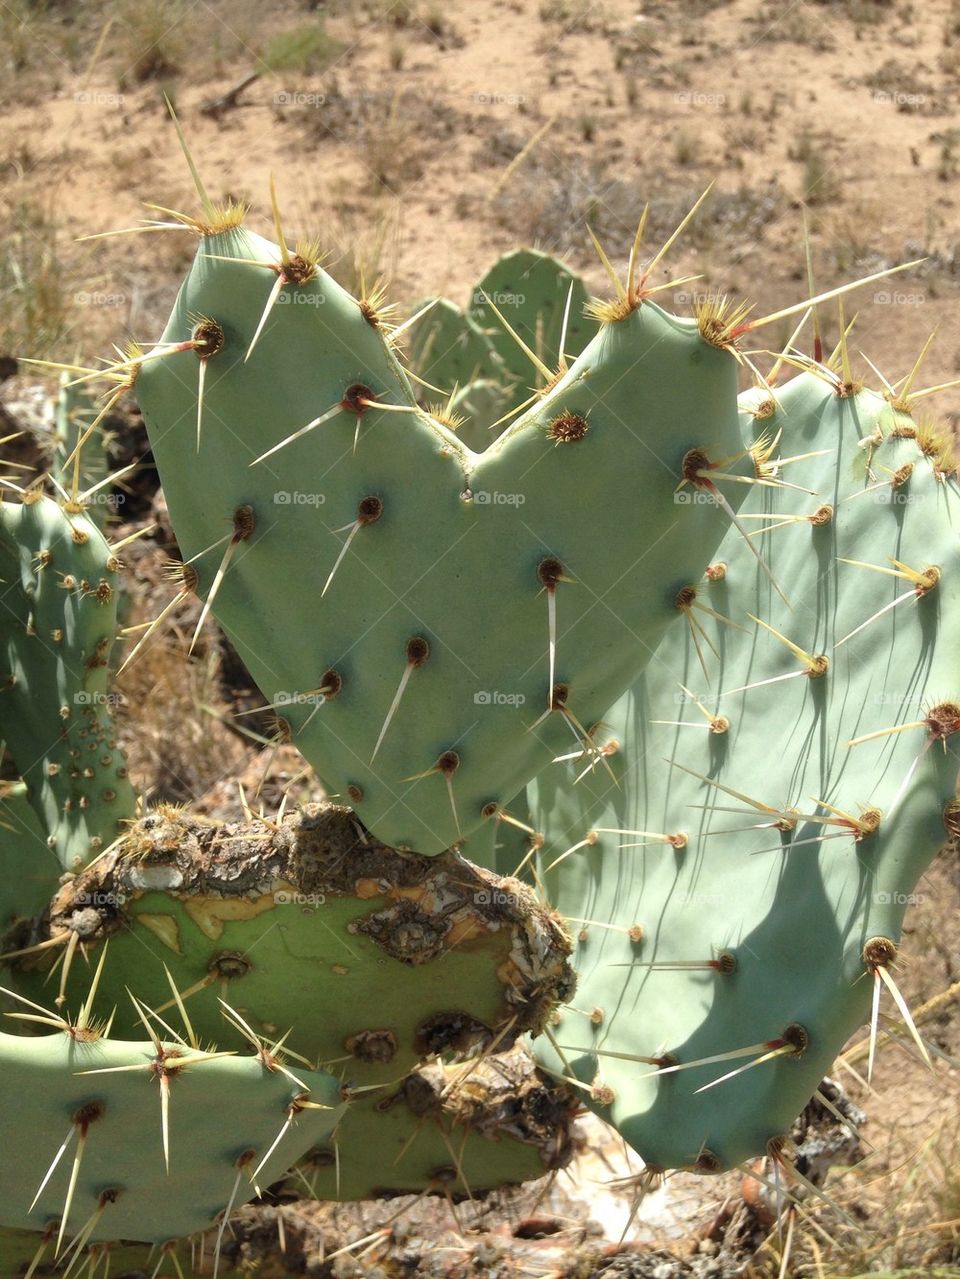 Cactus love